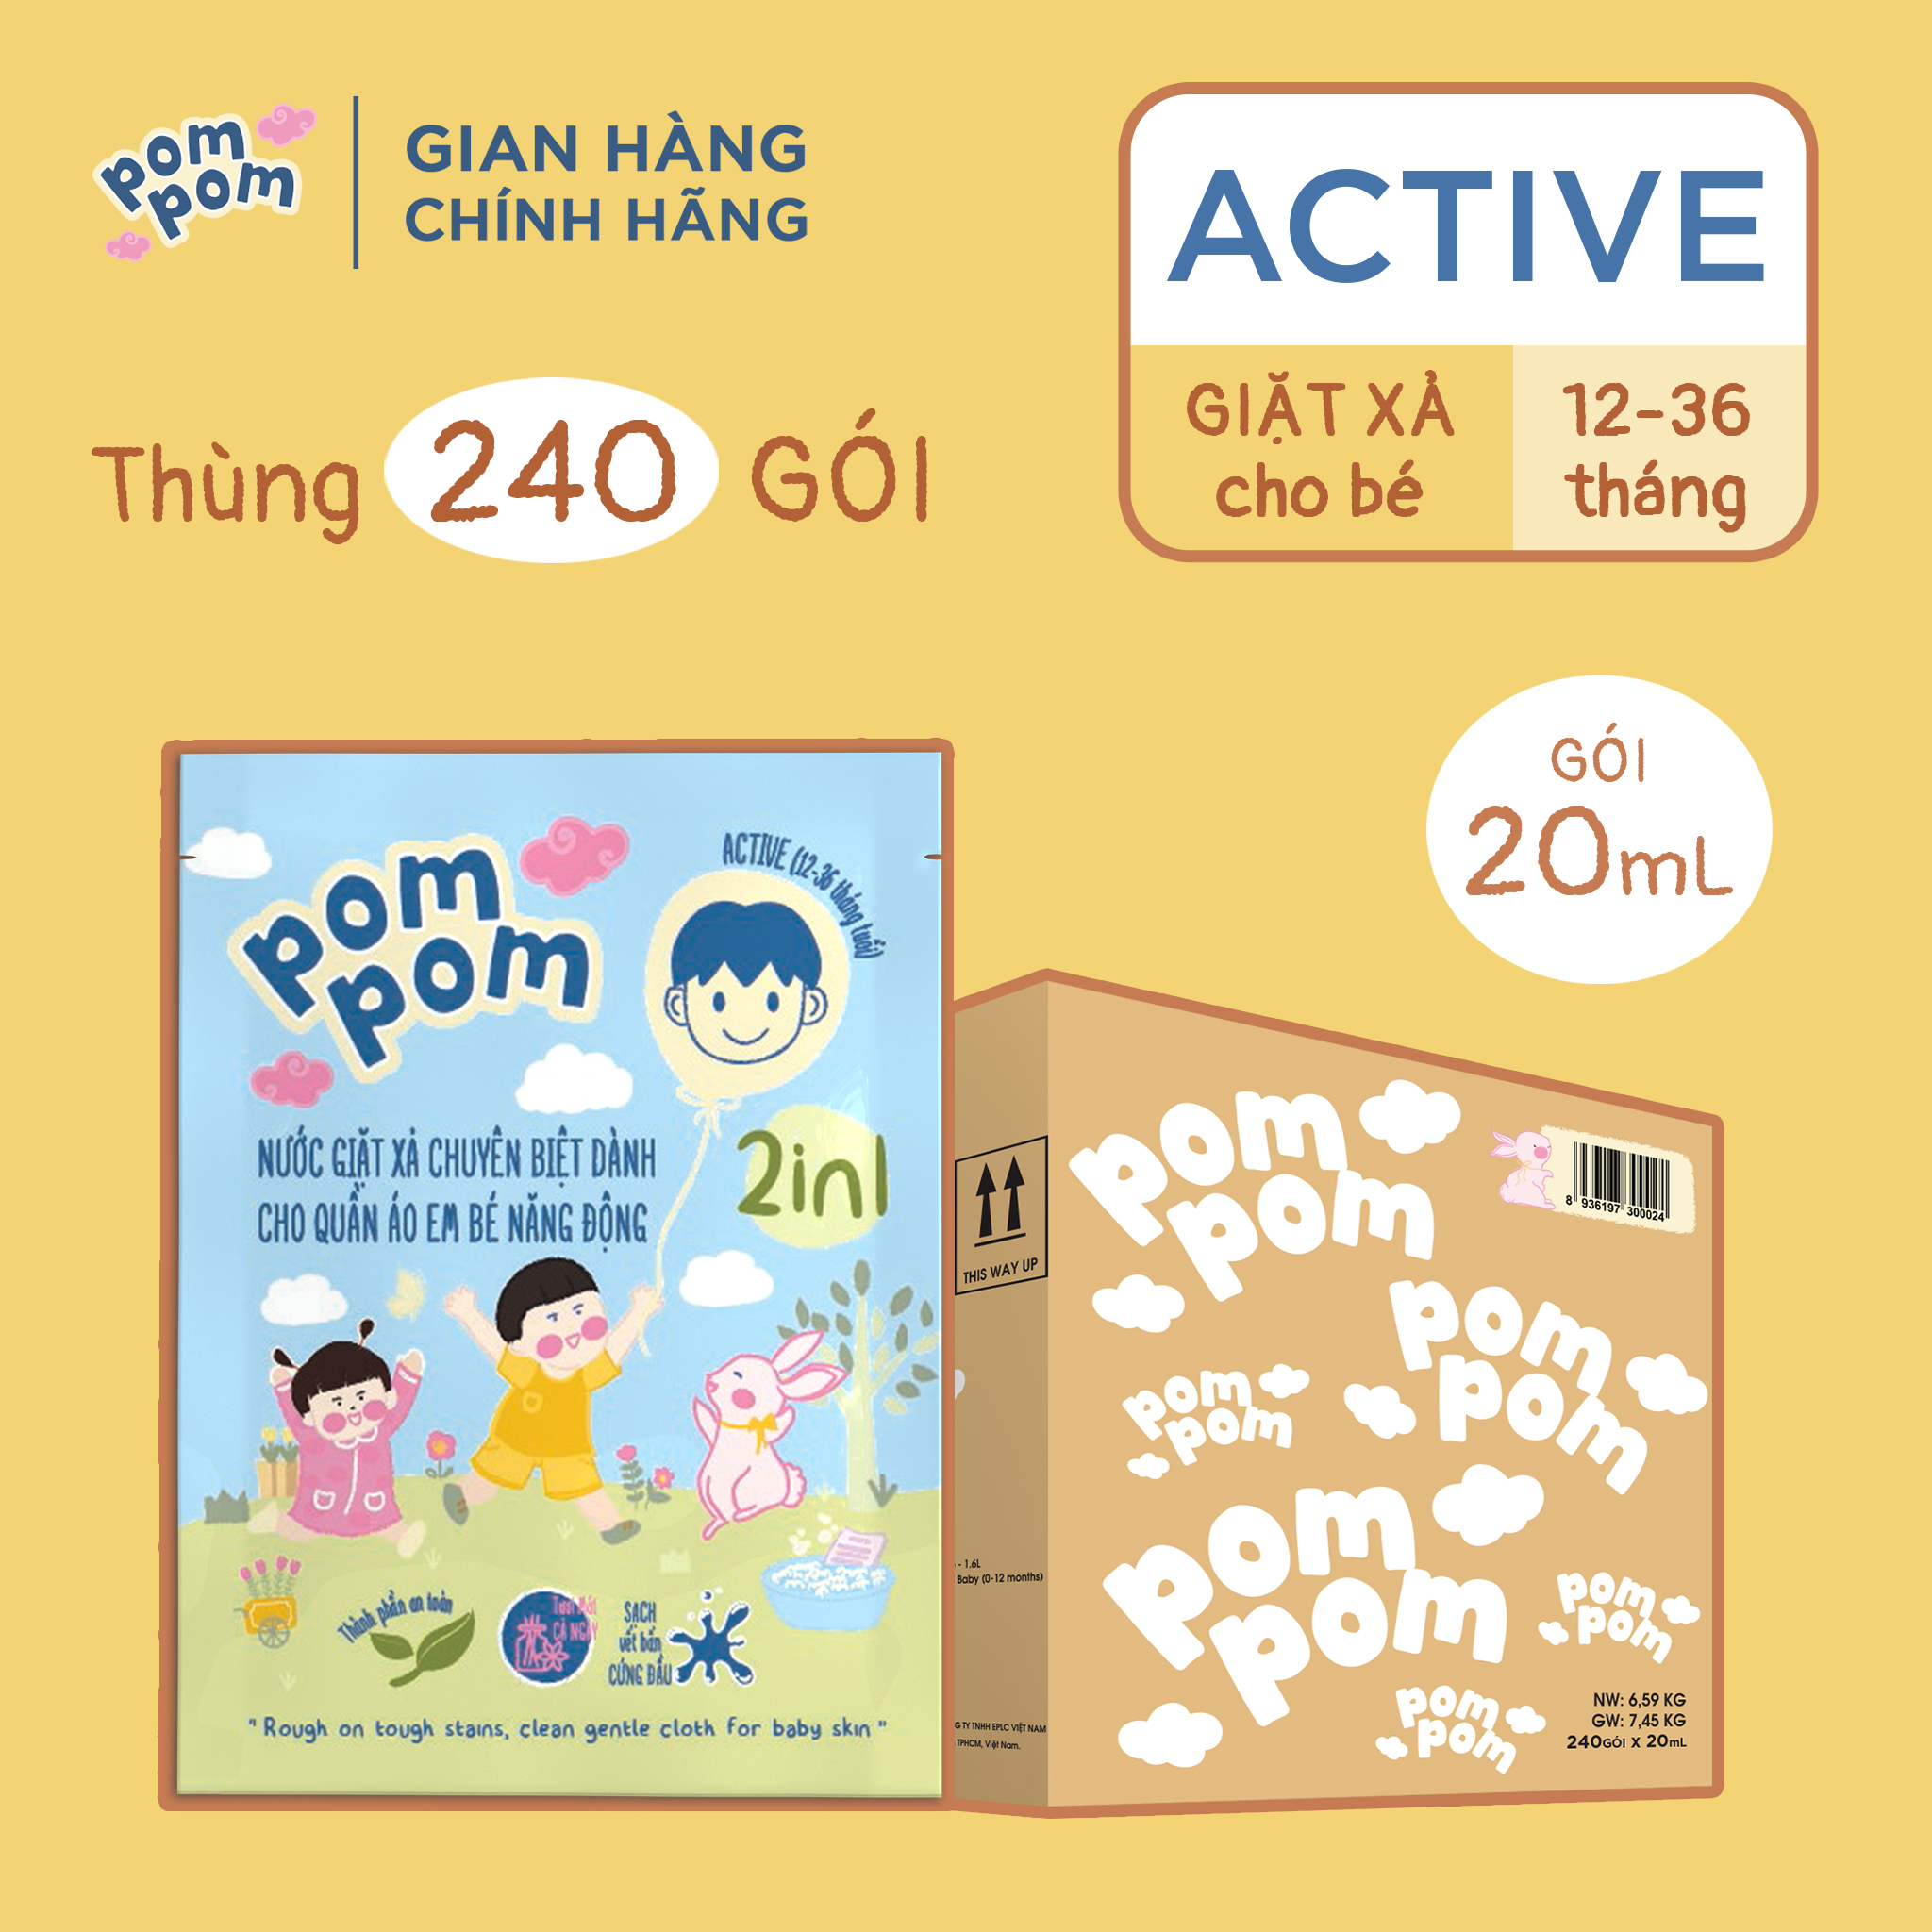 Thùng Gói Nước Giặt Xả Pom Pom Active An Toàn Cho Da Bé 1-3 Tuổi 1 Thùng